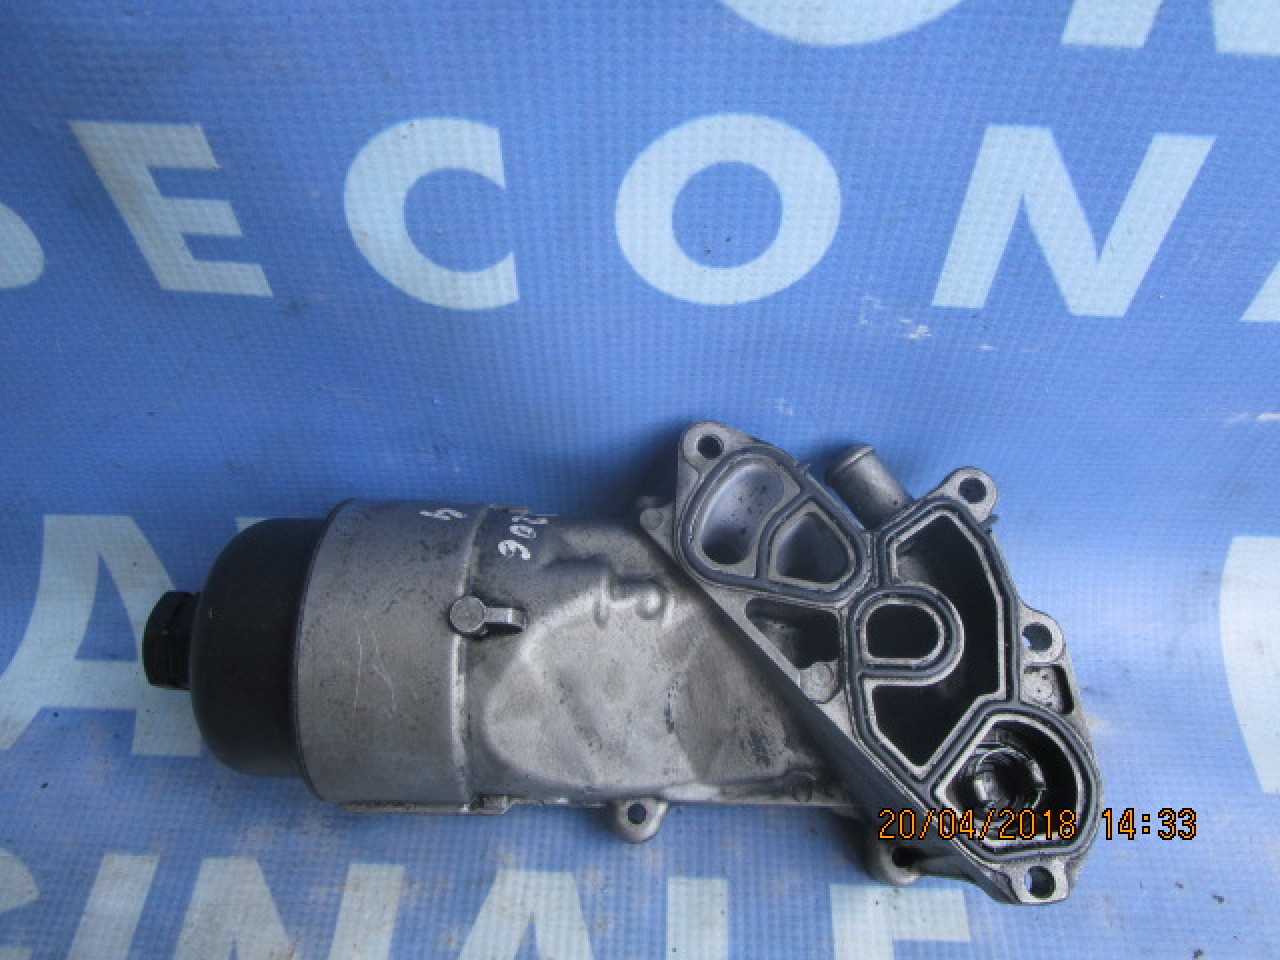 Suport filtru ulei Peugeot 206 1.4hdi ; 9641550680 #24996935